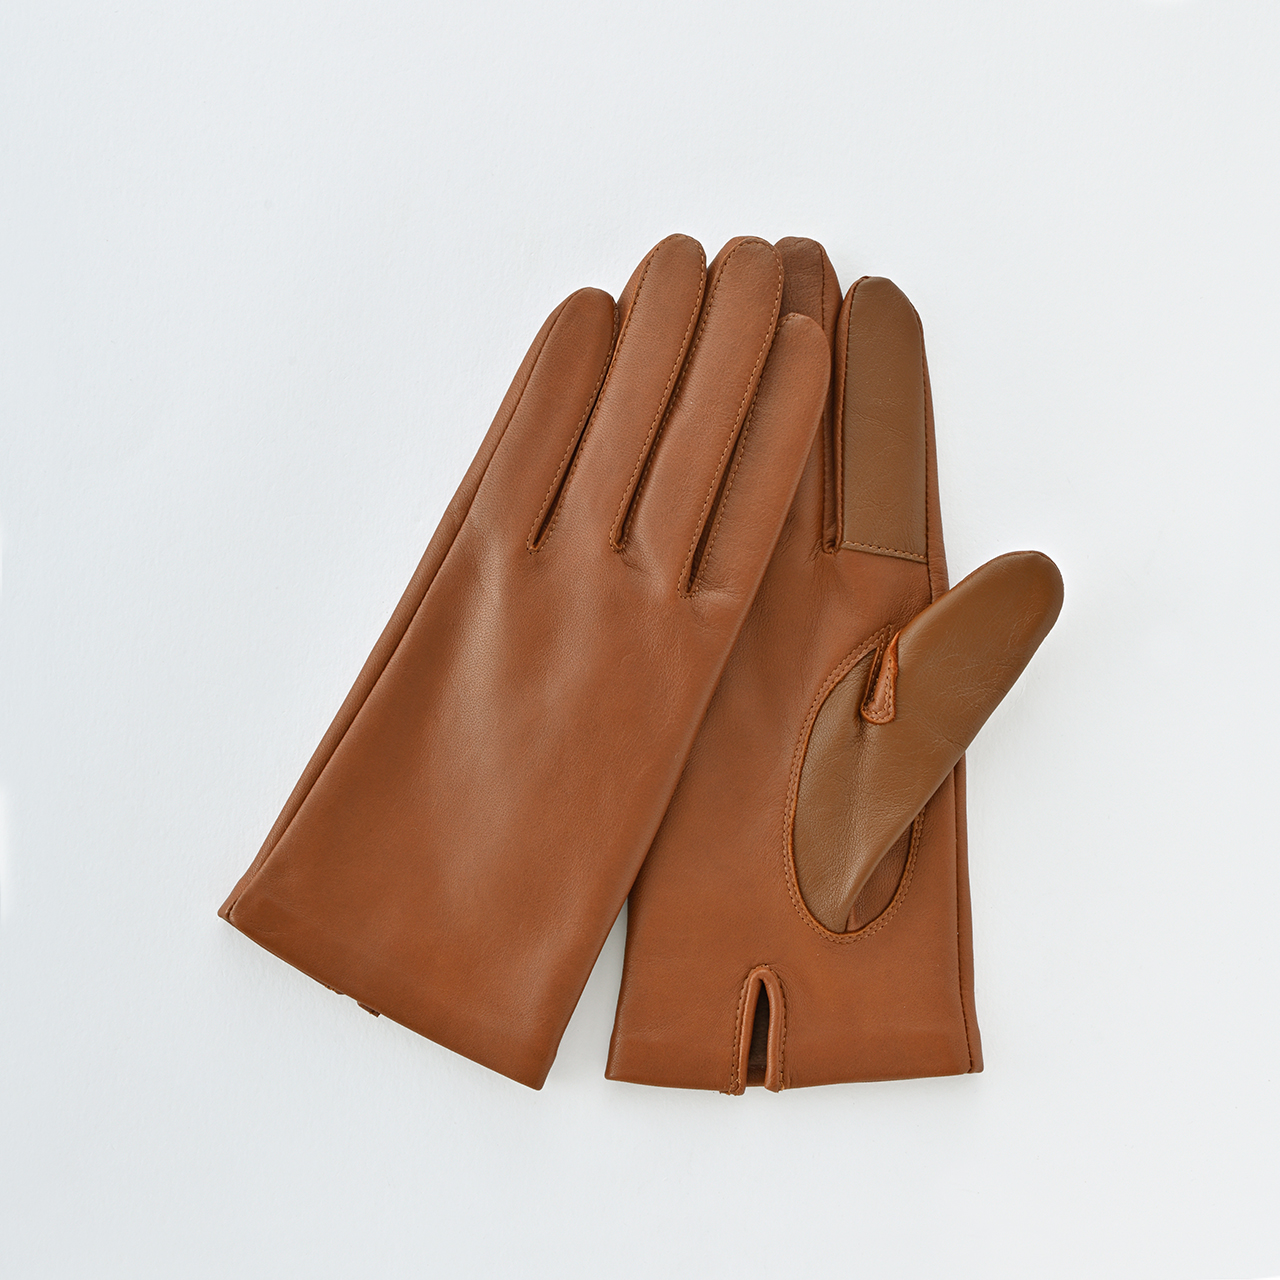 手袋の卸売商品一覧 | 服飾雑貨・アパレルの仕入れに最適・ブランド